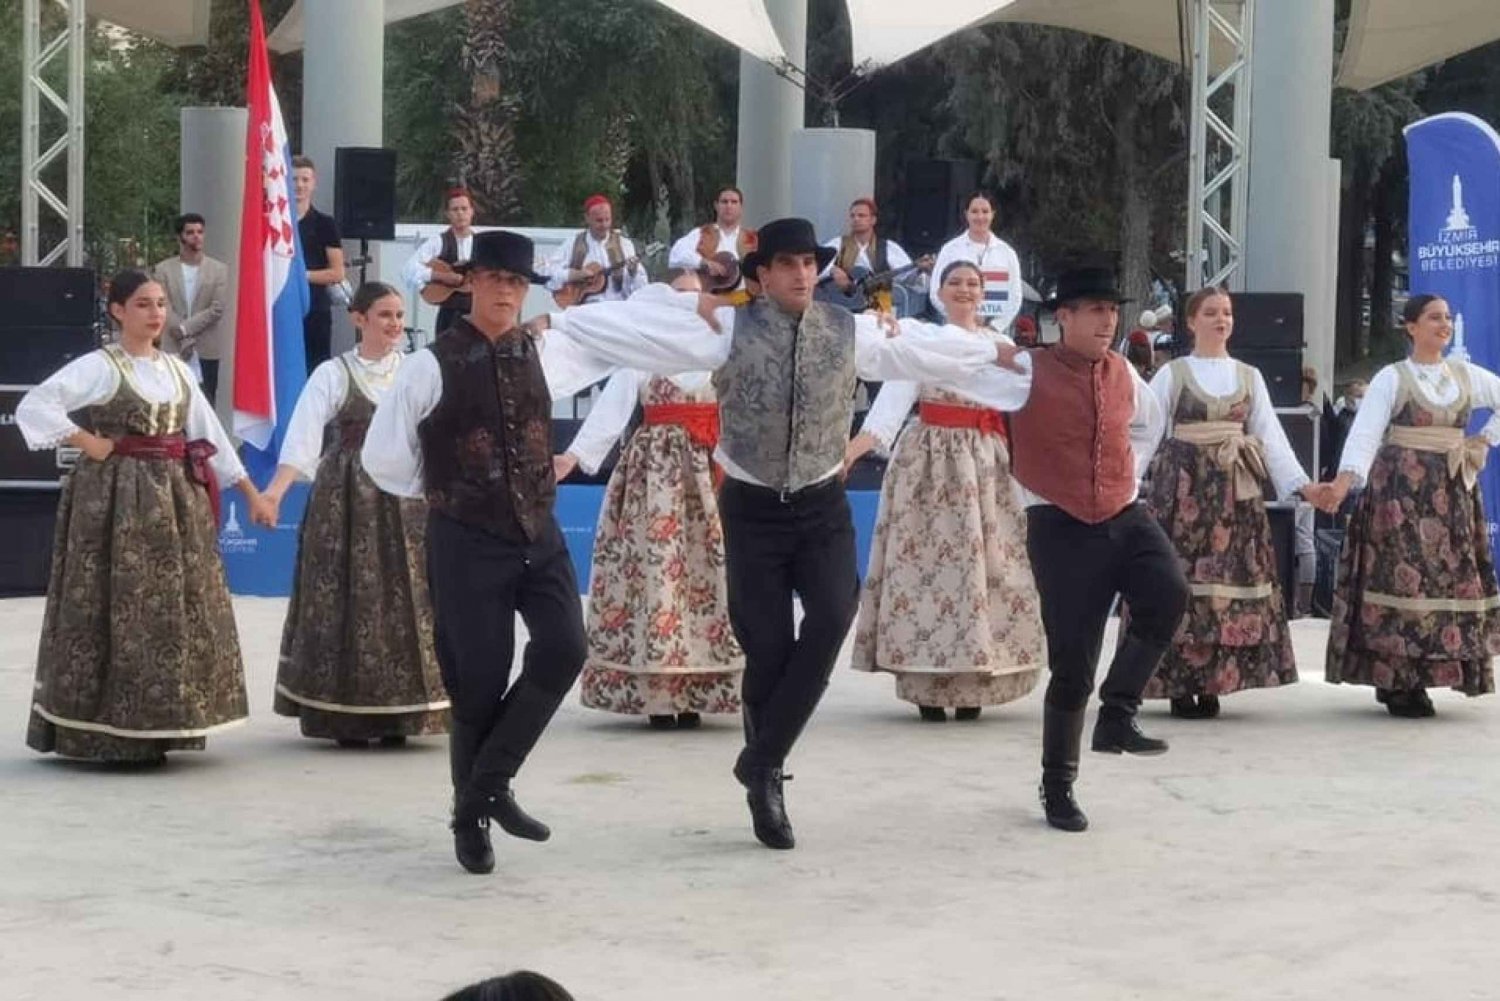 Dubrownik: chorwackie przedstawienie folklorystyczne